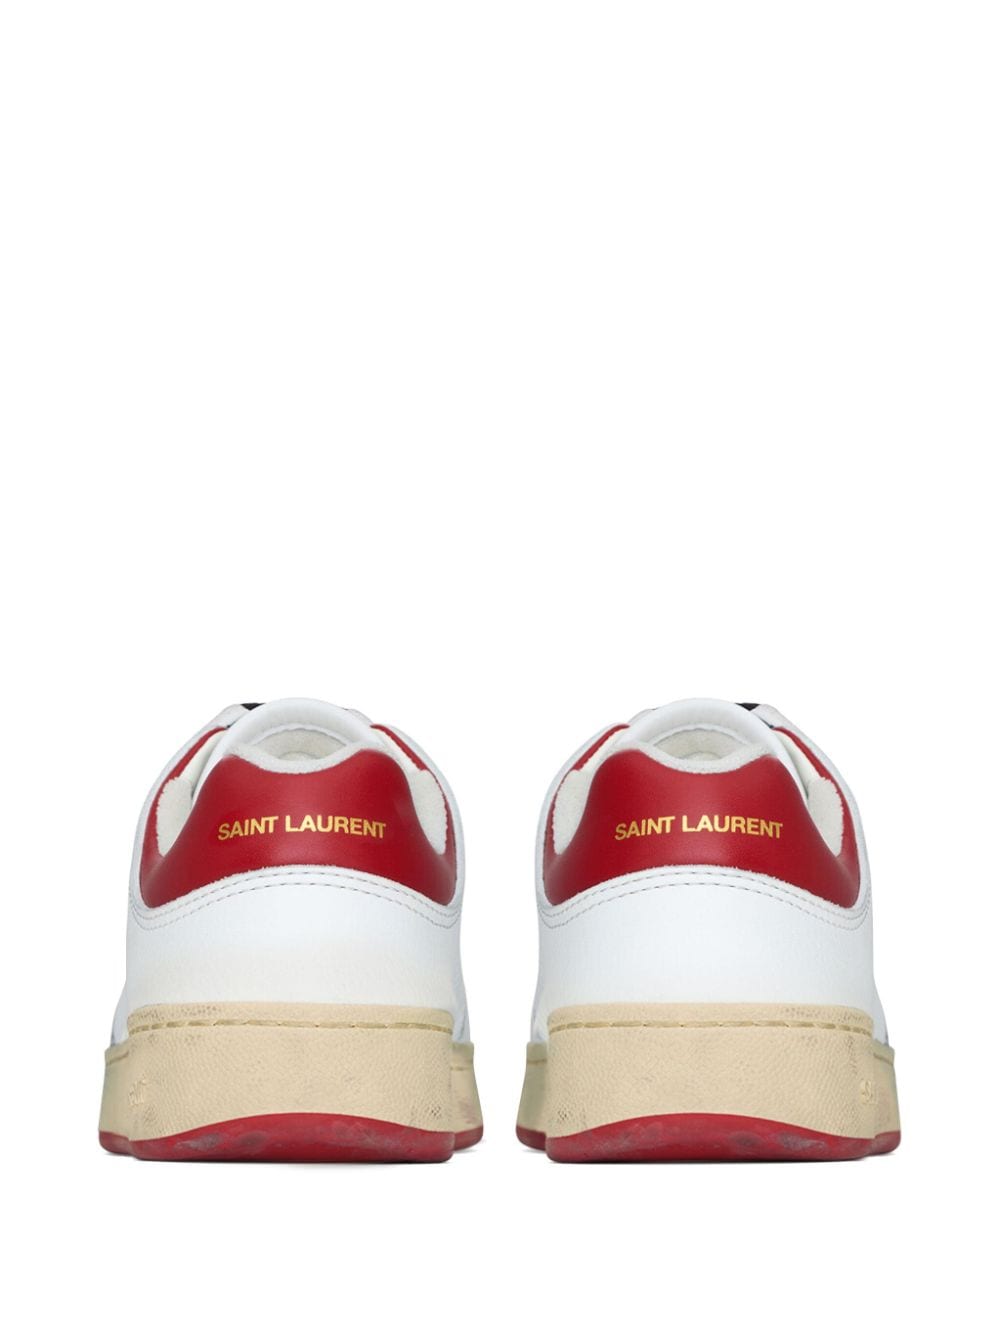 Giày Sneakers da trắng nam có đế đỏ và chi tiết logo chữ ký